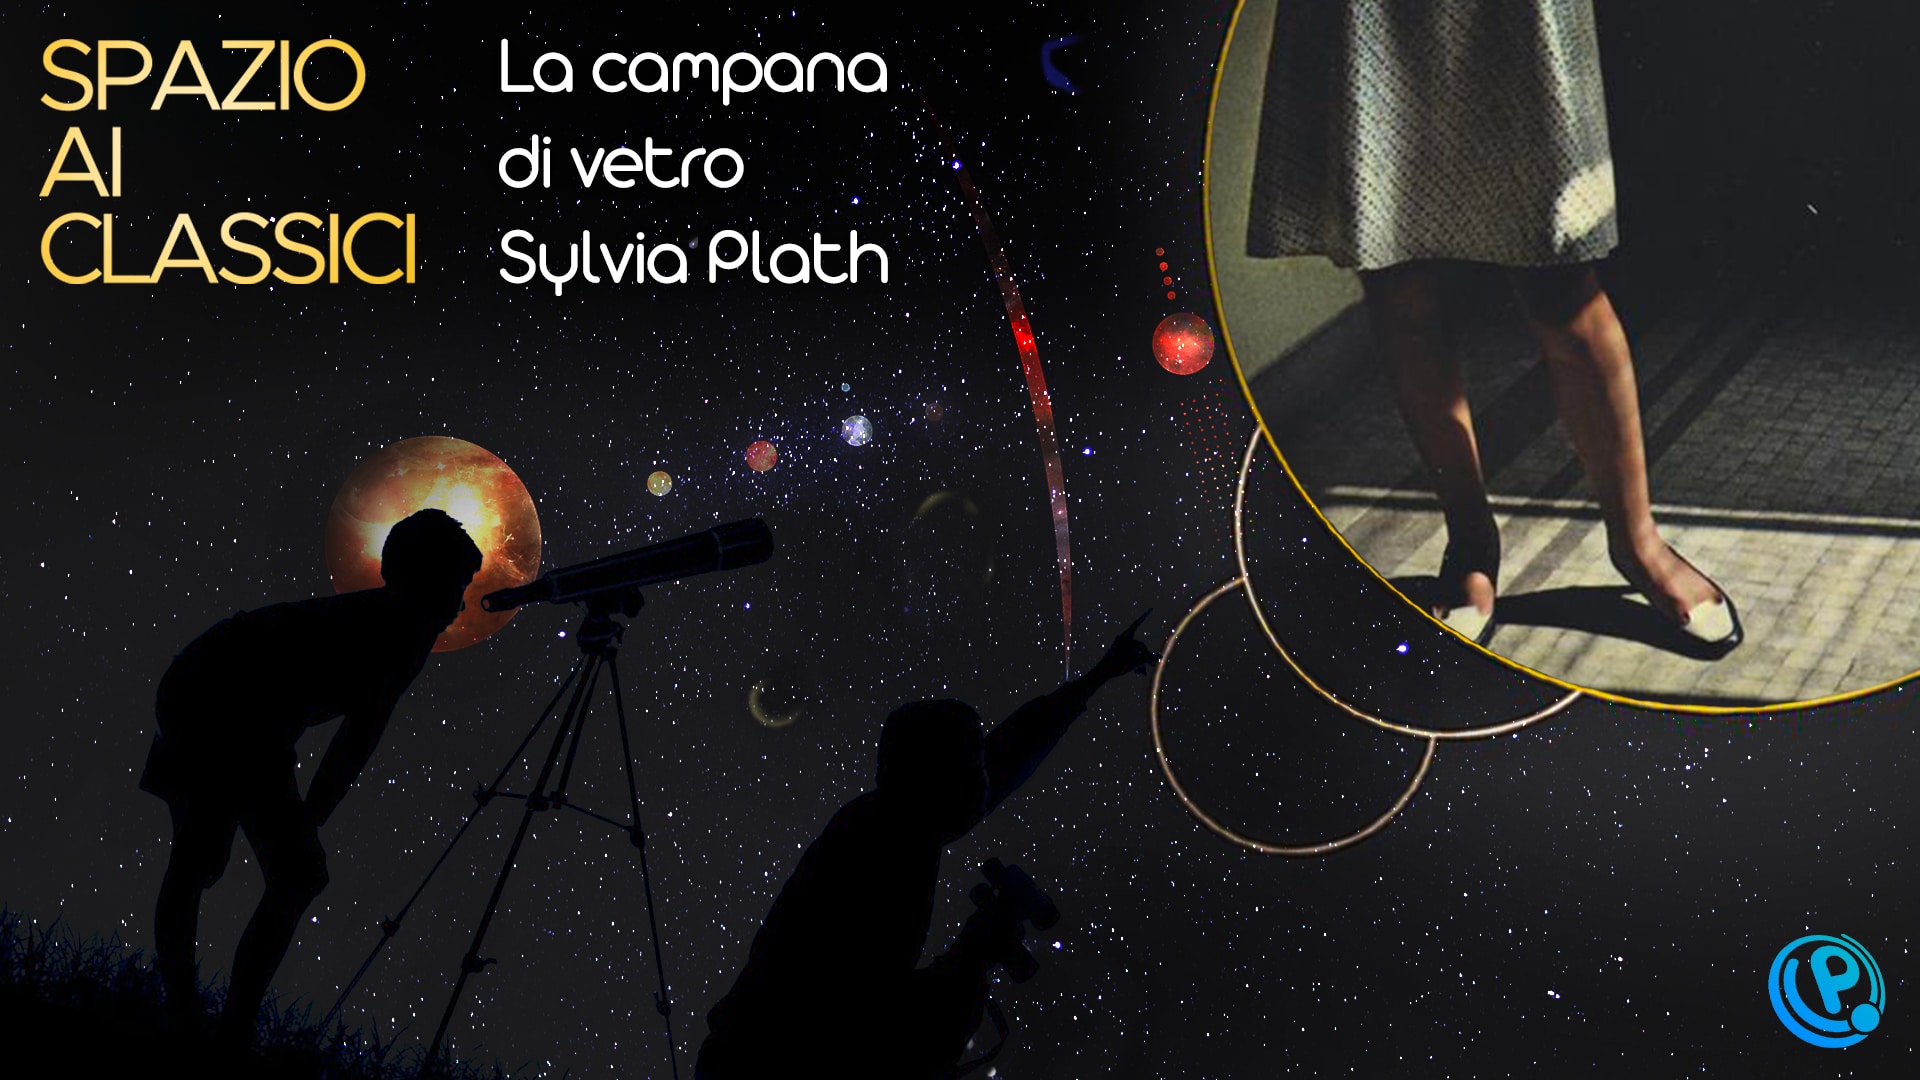 La campana di vetro di Sylvia Plath per Spazio ai Classici